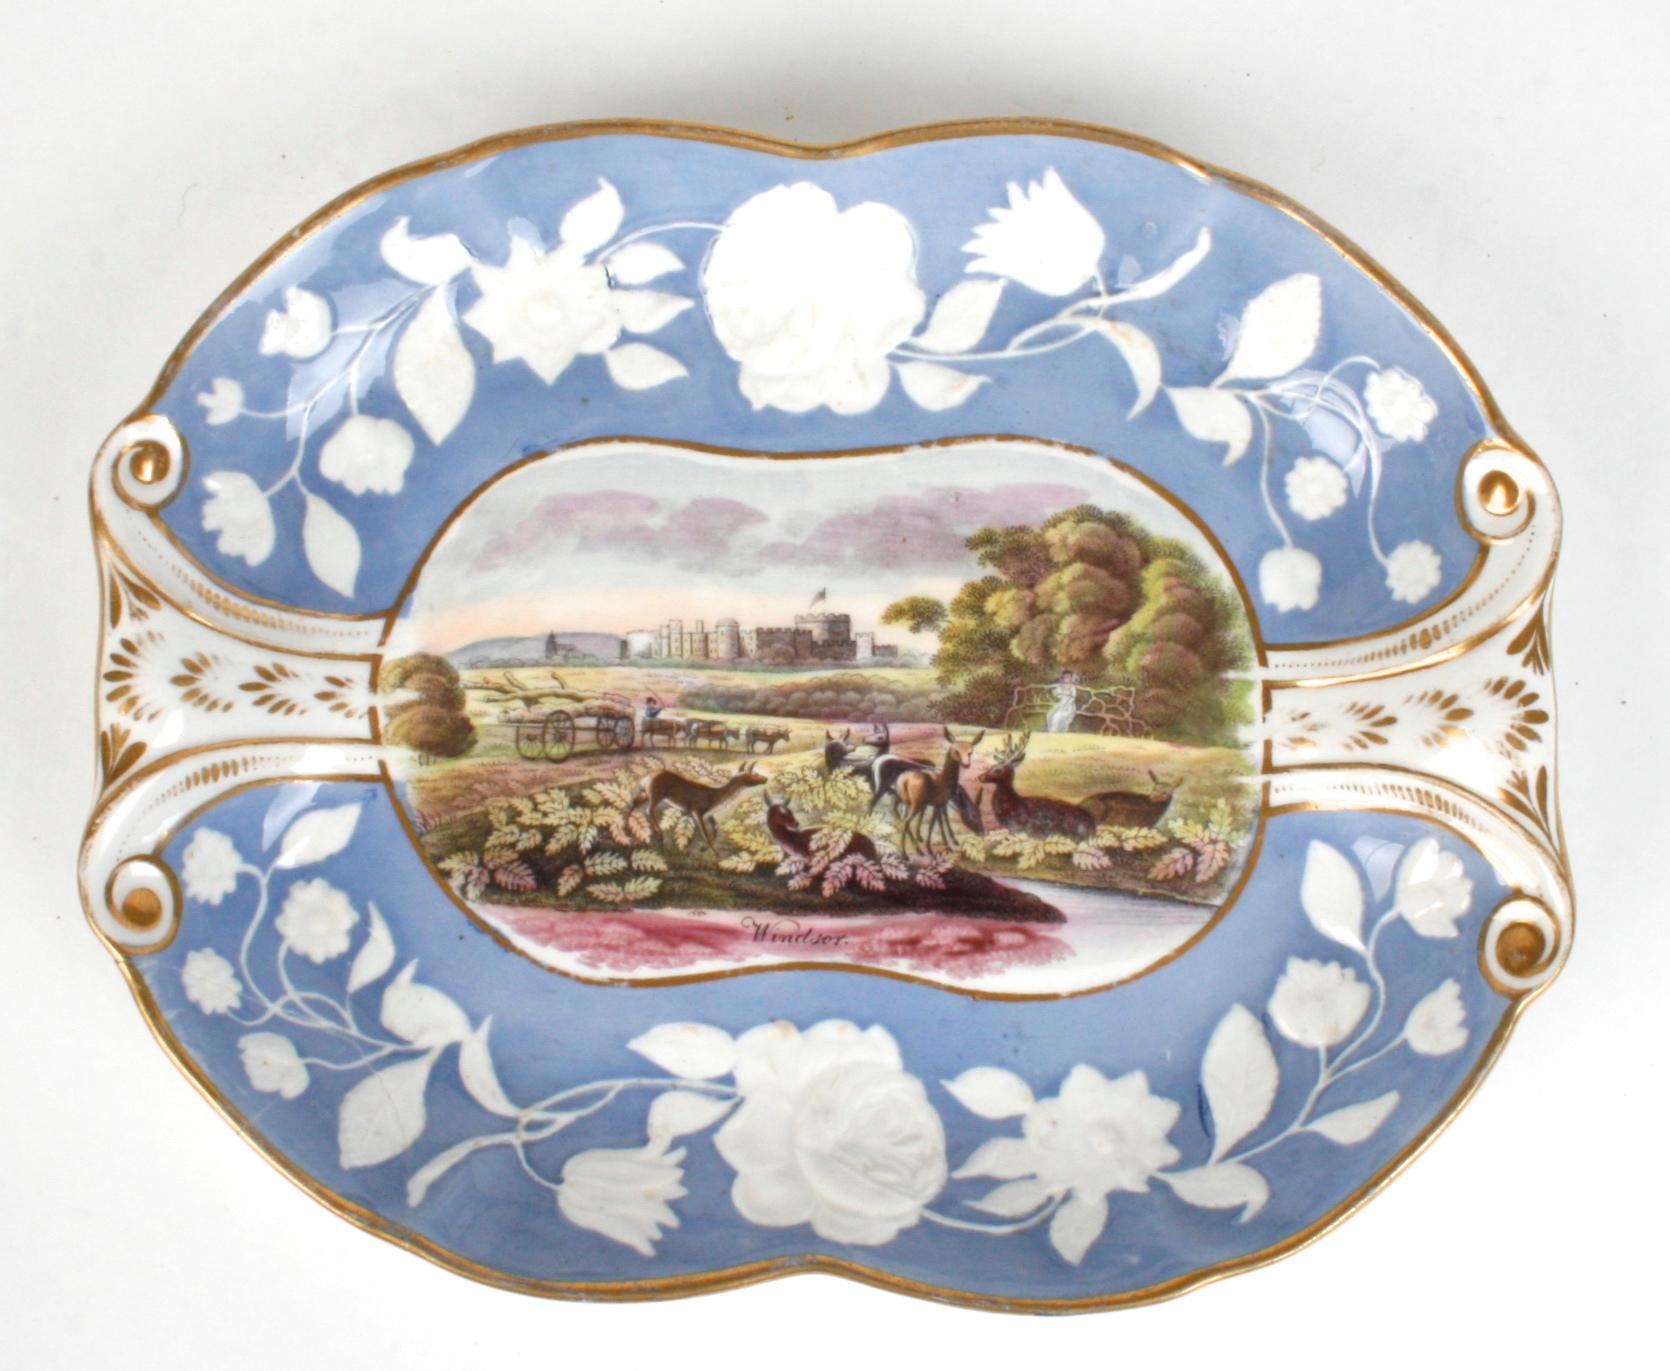 Trois pièces de service Pâte-sur-pâte de New Hall anglais avec des décors britanniques. Chacune d'entre elles présente une bordure florale en relief en bleu et blanc, bordée d'accents dorés. Les scènes comprennent le château de Windsor, le parc de